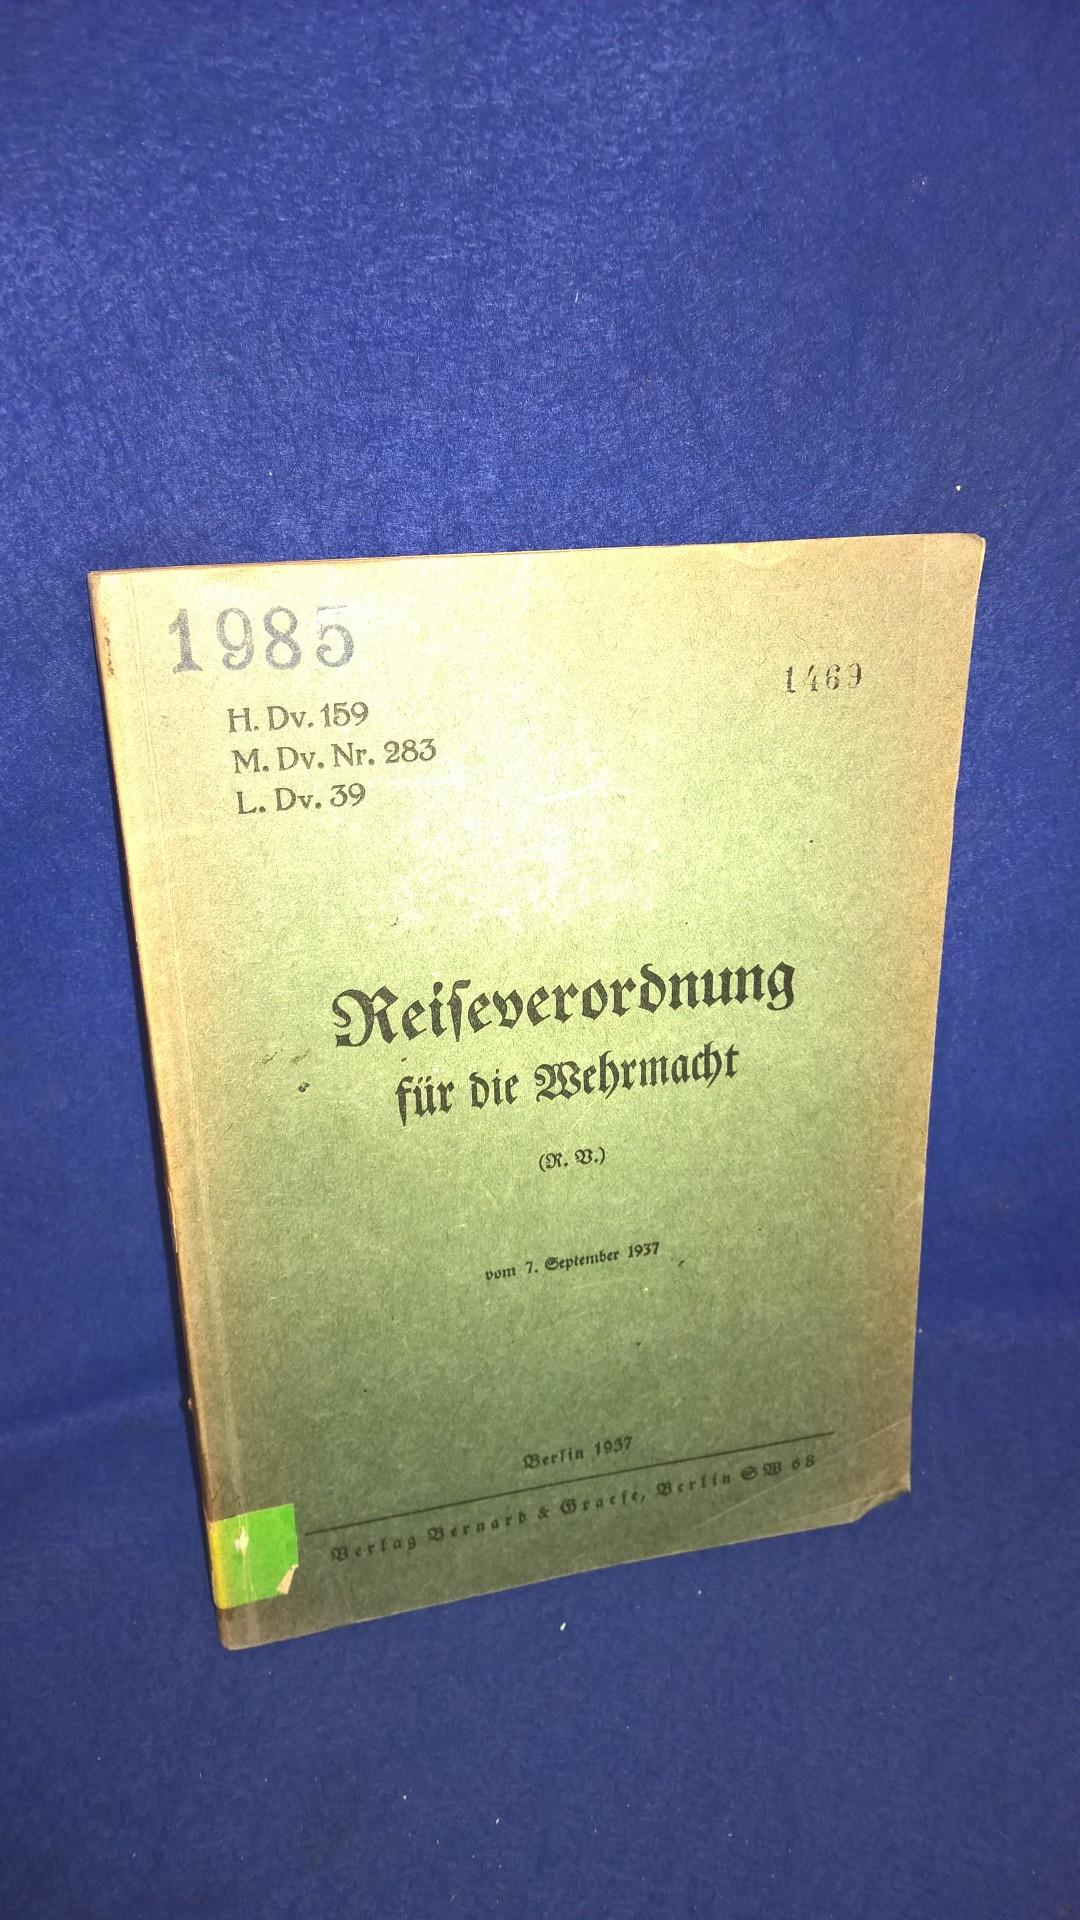 H.Dv. 159. Reiseverordnung für die Wehrmacht. September 1937.